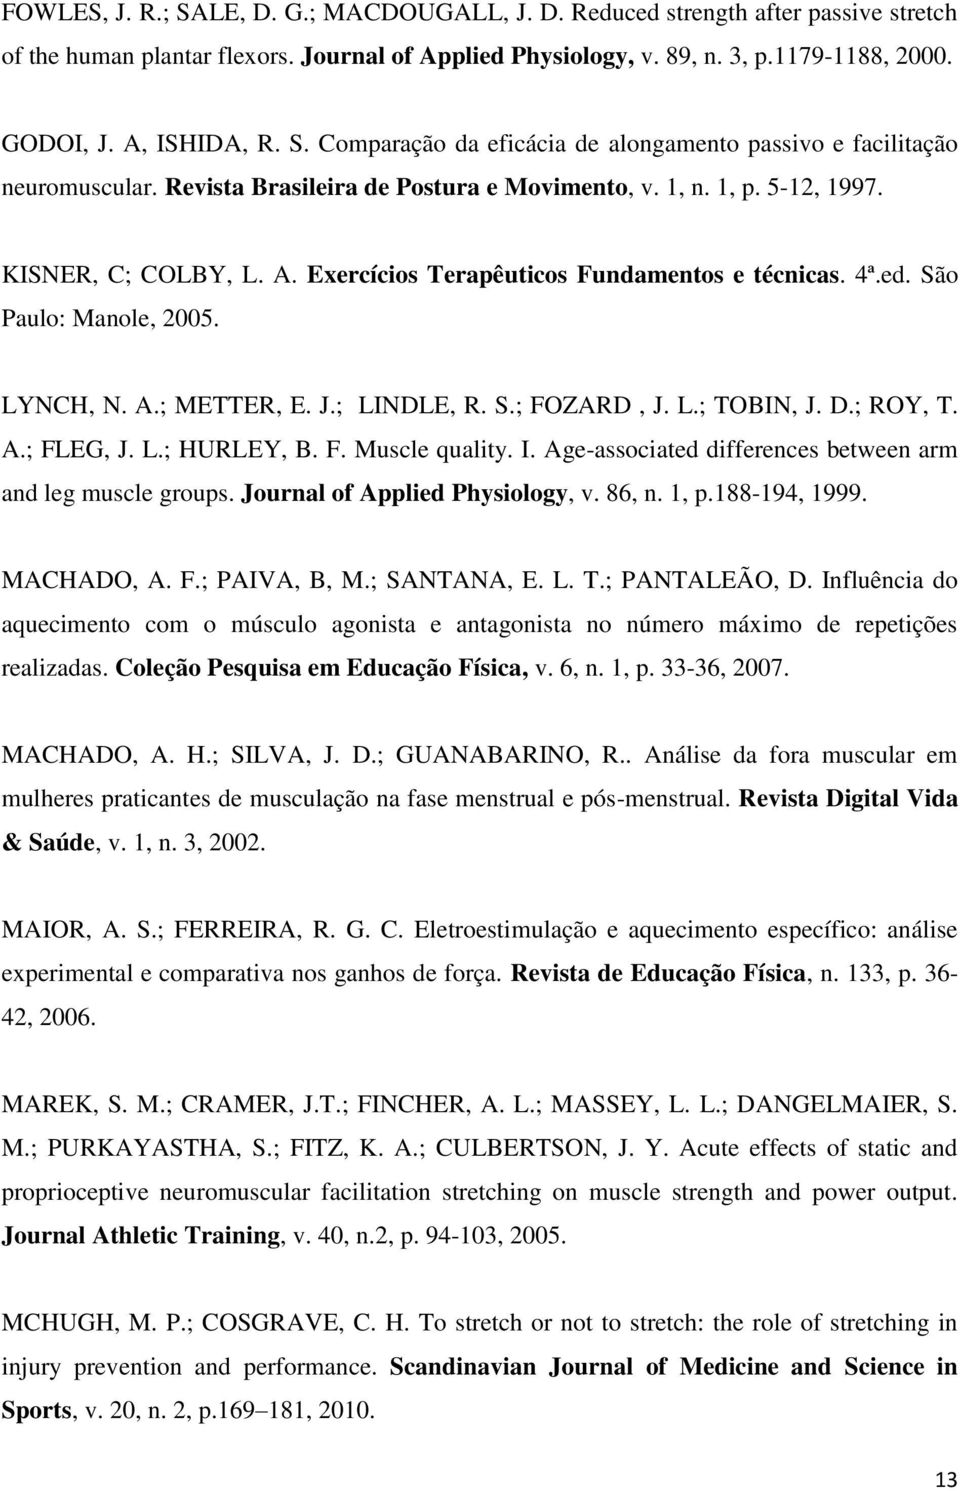 Exercícios Terapêuticos Fundamentos e técnicas. 4ª.ed. São Paulo: Manole, 2005. LYNCH, N. A.; METTER, E. J.; LINDLE, R. S.; FOZARD, J. L.; TOBIN, J. D.; ROY, T. A.; FLEG, J. L.; HURLEY, B. F. Muscle quality.